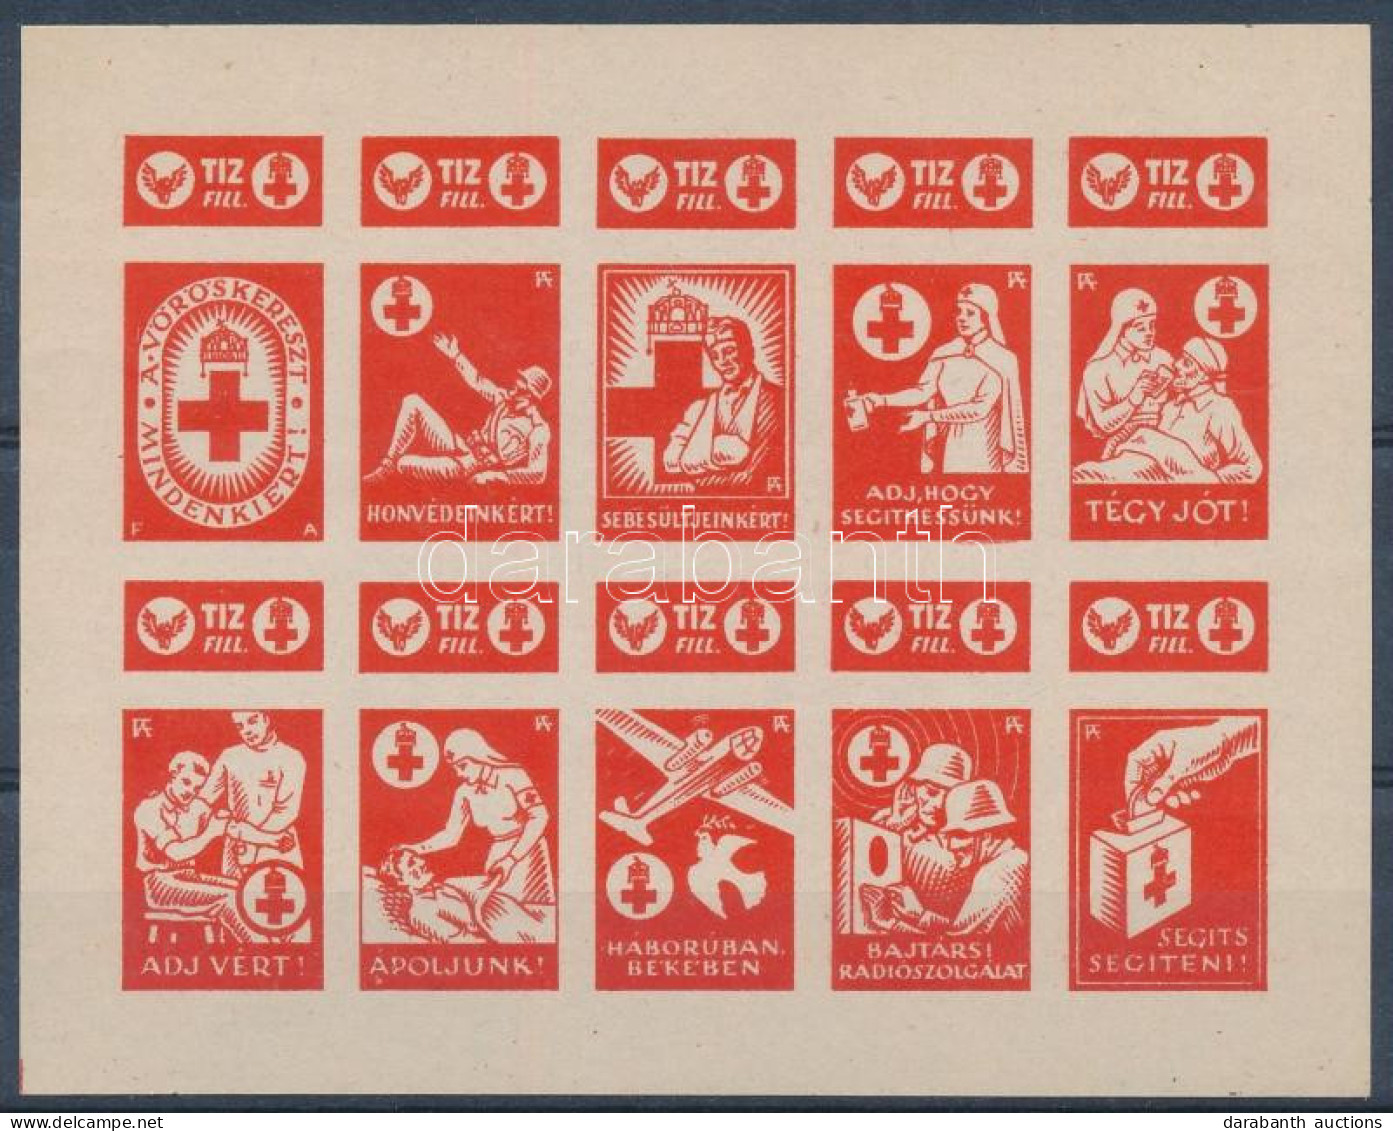 ~1942 Vöröskereszt 10f Vágott Adománybélyeg 10-es Kisívben / Hungarian Imperforated Charity Stamp In Mini Sheet Of 10 - Non Classés